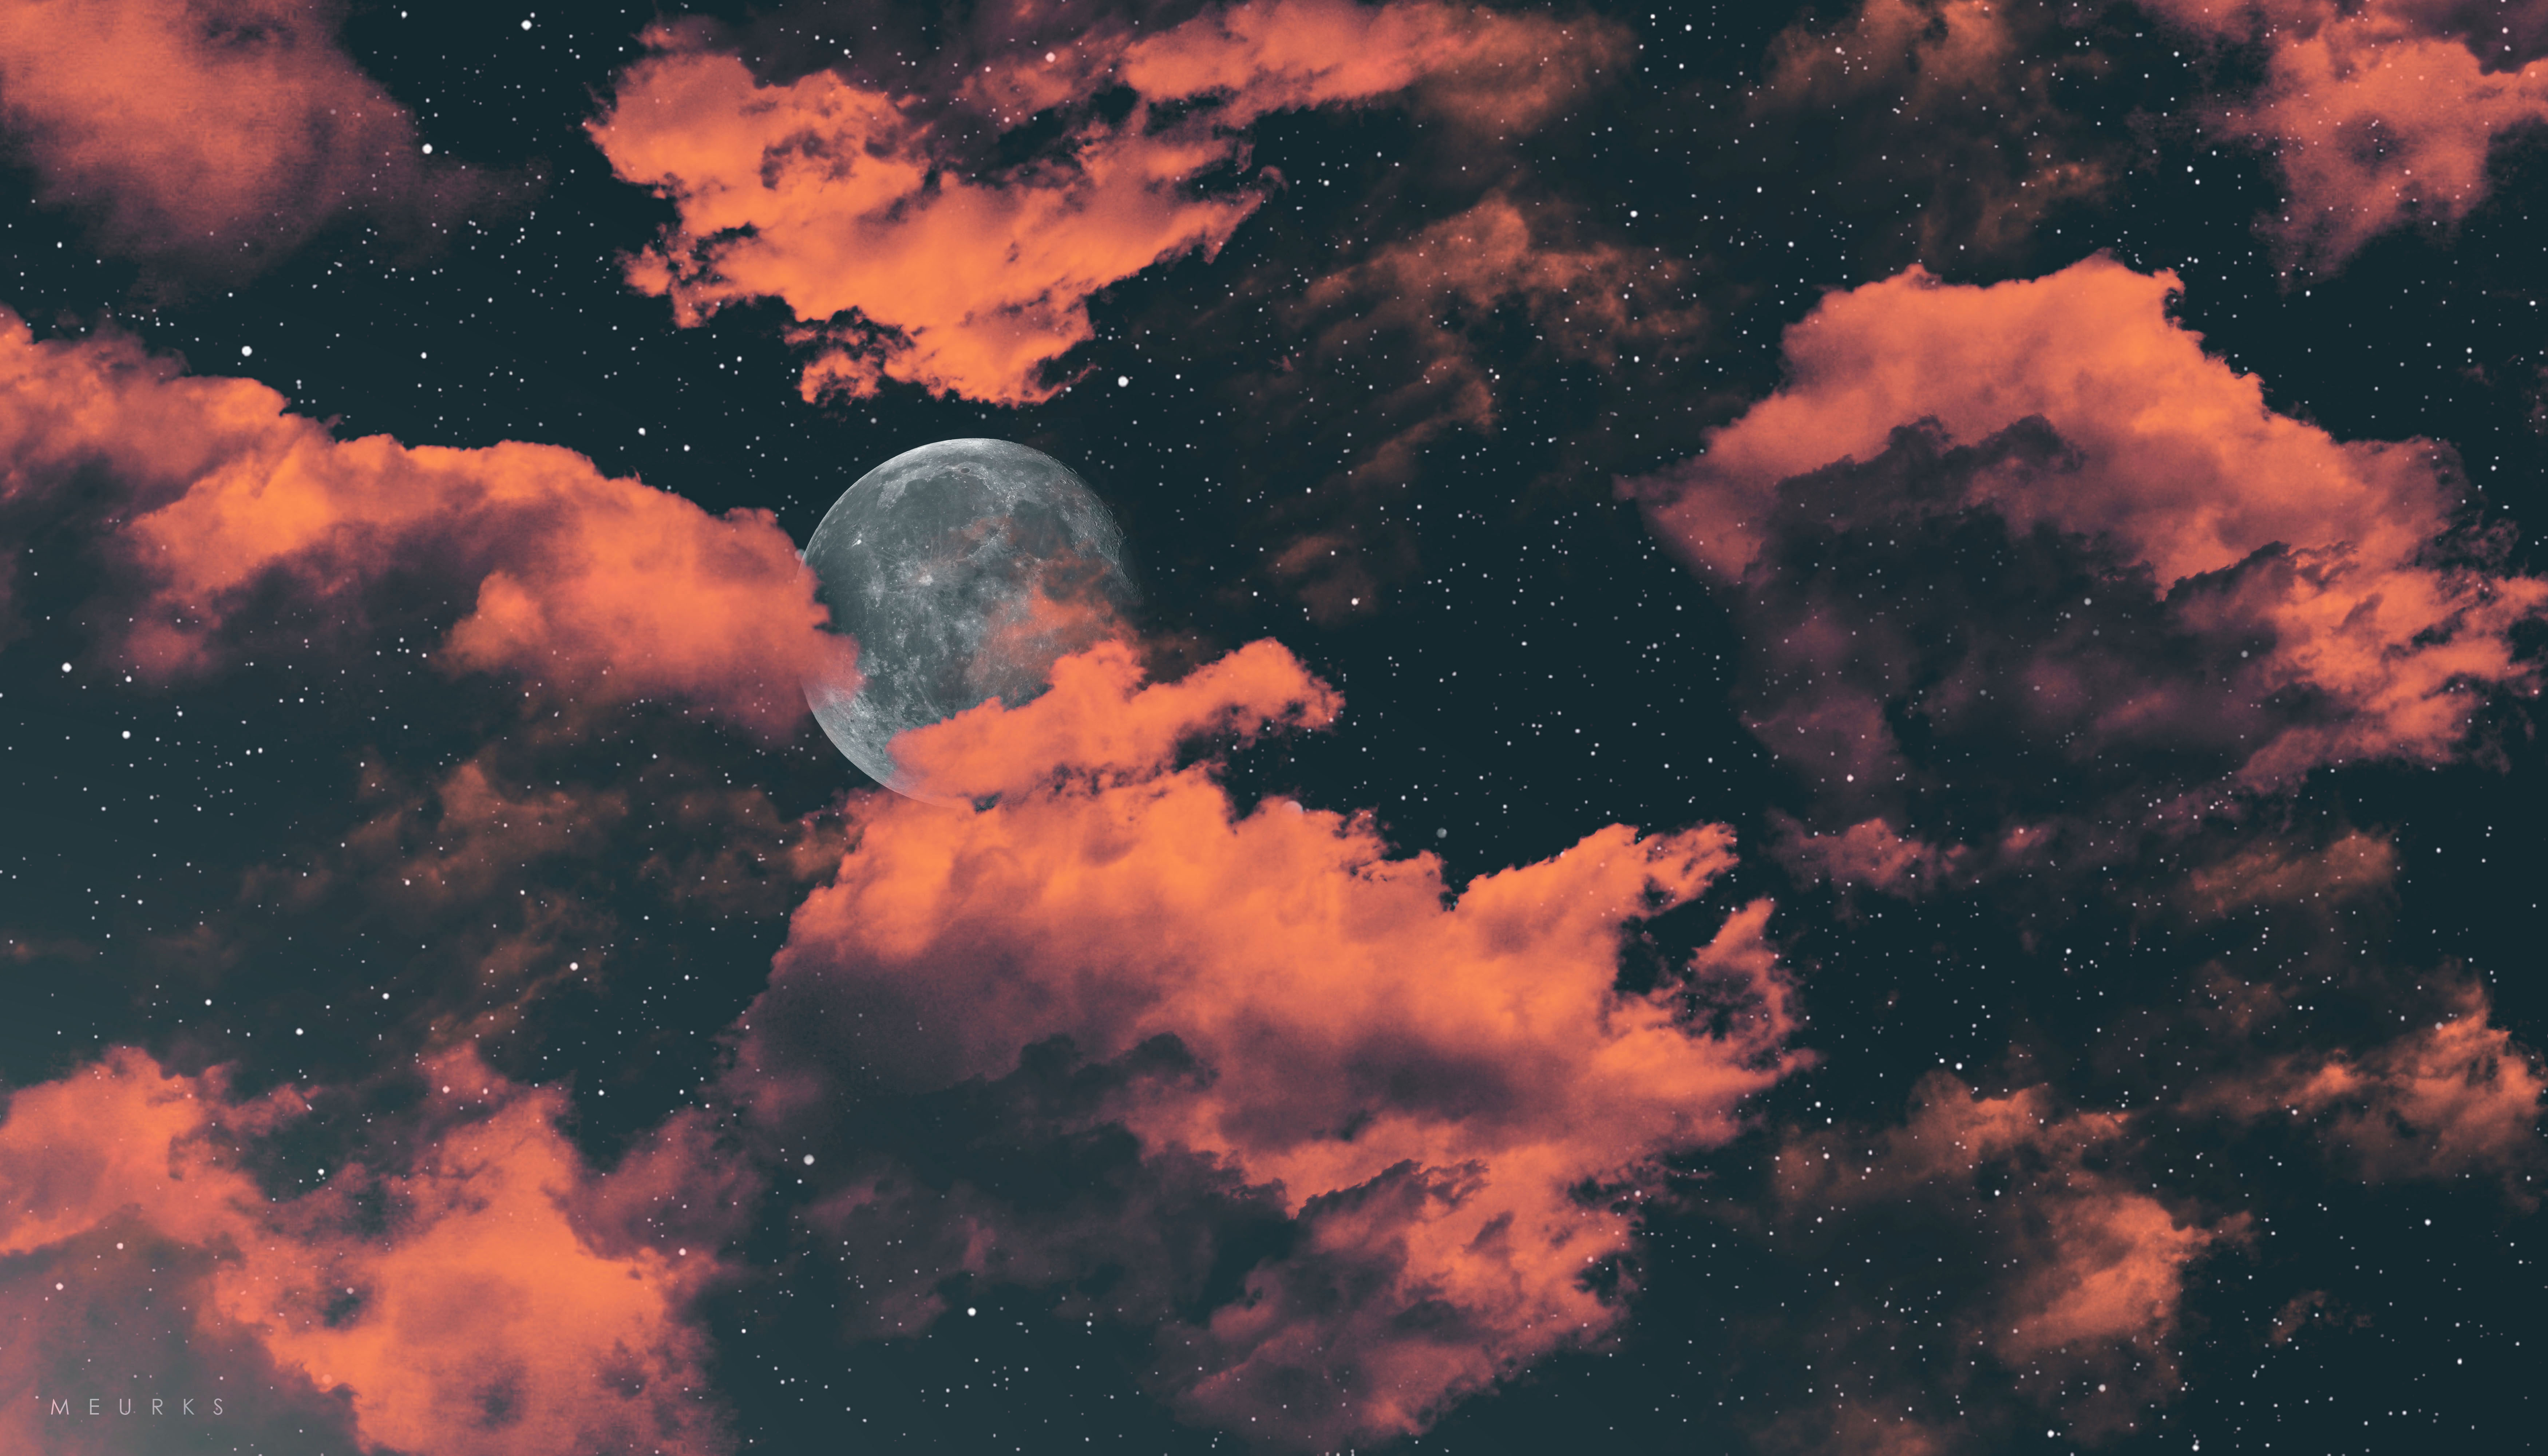 Trăng tròn đêm đen là một trong những khung cảnh đẹp nhất mà bạn có thể ngắm nhìn trên trời đêm. Hình nền trăng tròn đêm đen sẽ mang đến cho bạn một không gian yên bình và huyền ảo với ánh trăng lung linh. Sử dụng hình nền này để trang trí cho thiết bị của bạn sẽ tạo nên sự độc đáo và đẹp mắt.